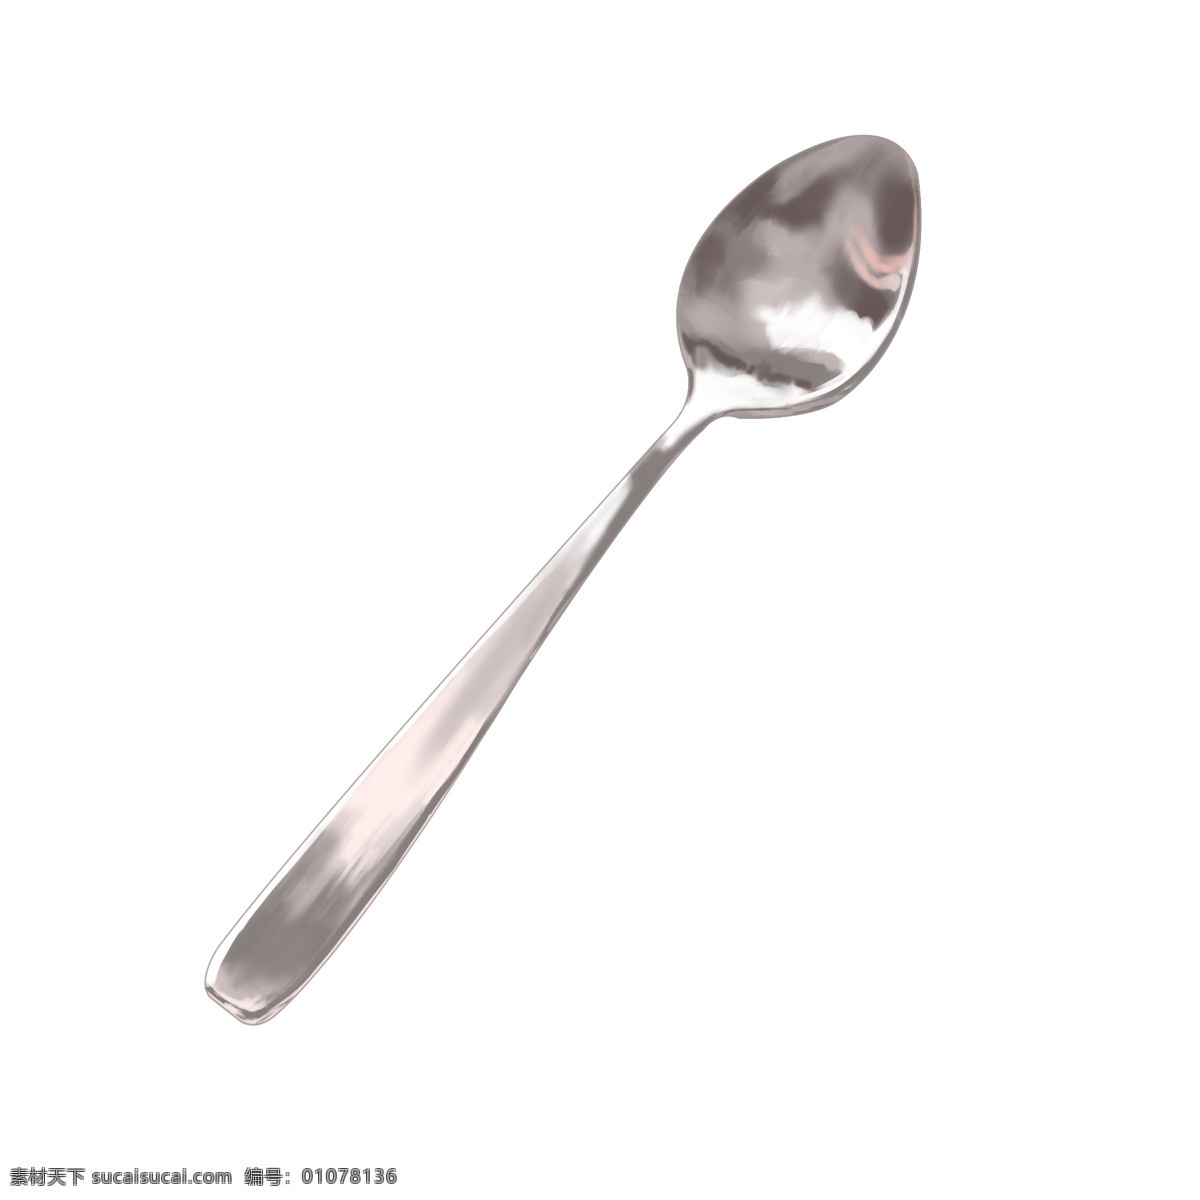 简易 不锈钢 勺子 插图 不锈钢勺子 卡通 图案 木勺 银色勺子 系列 装饰 贴画 餐具 简易勺子